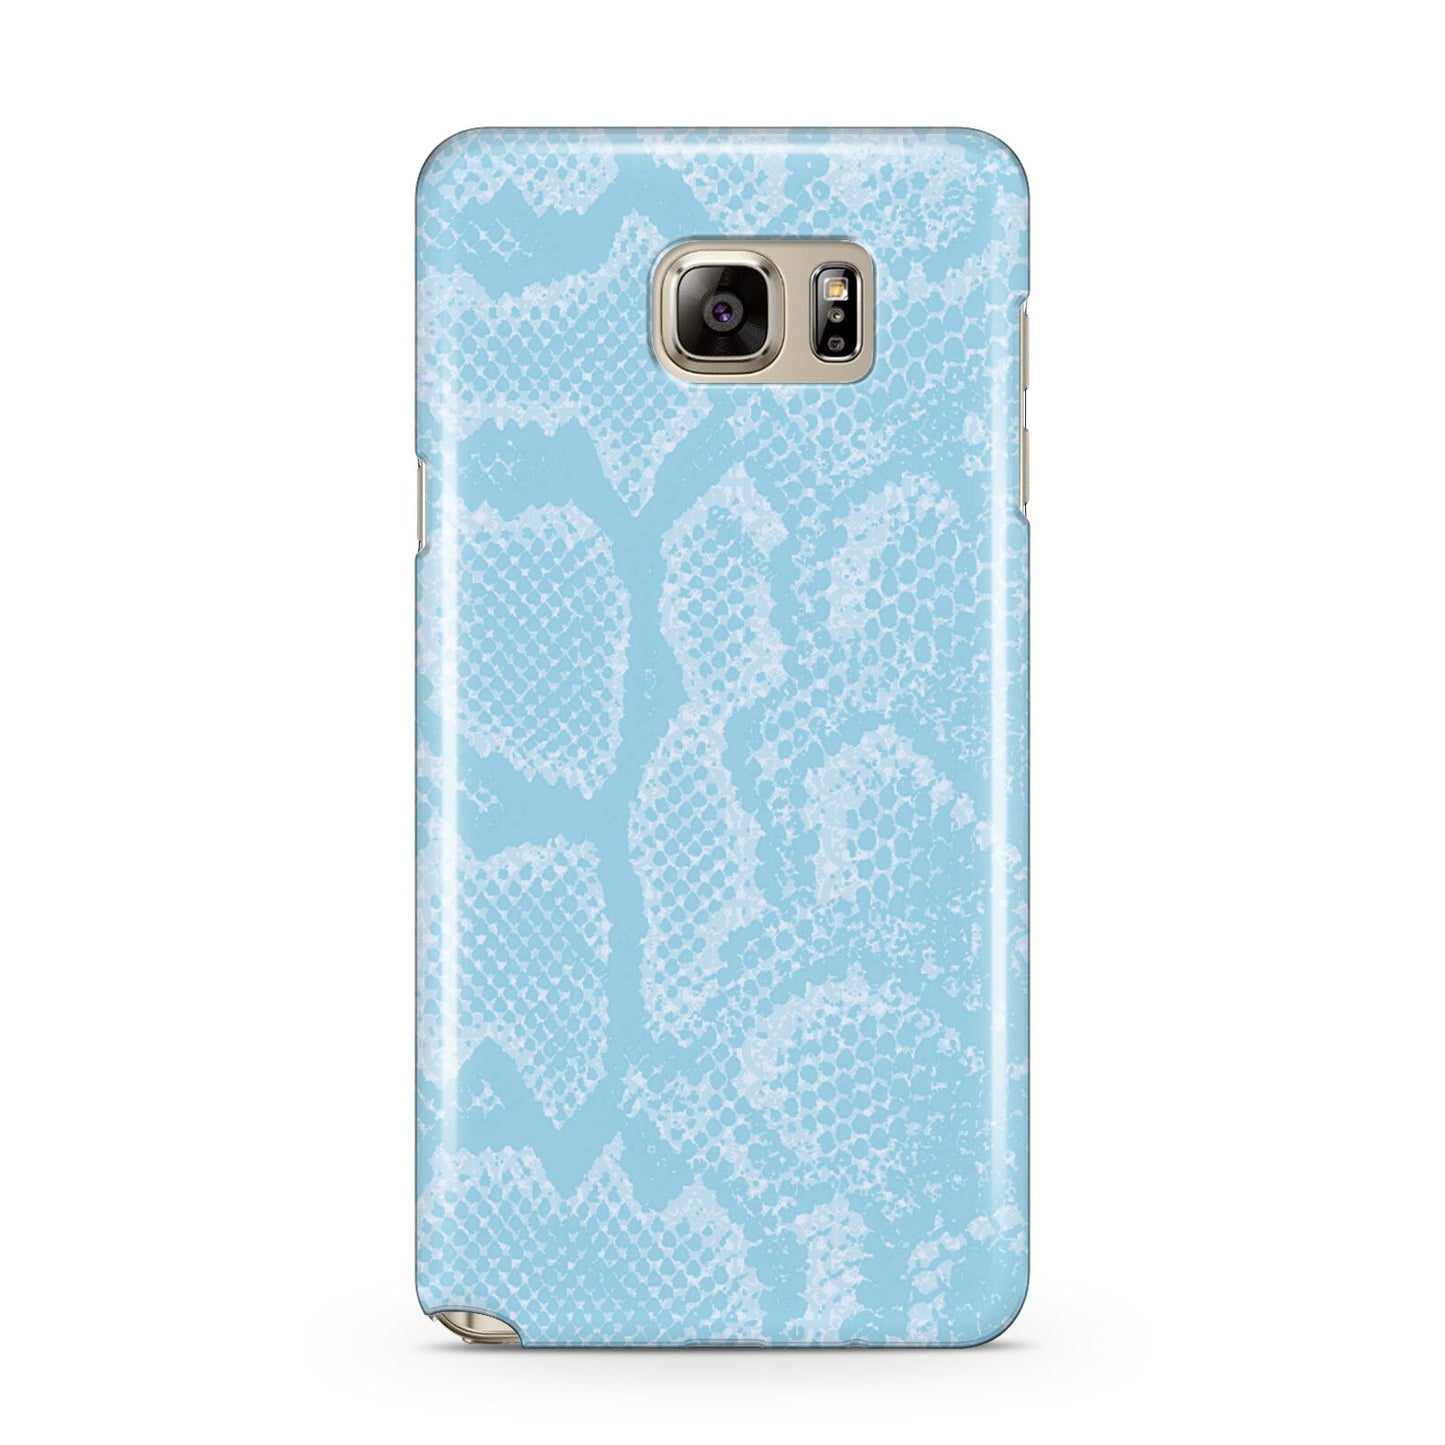 Blue Snakeskin Samsung Galaxy Note 5 Case